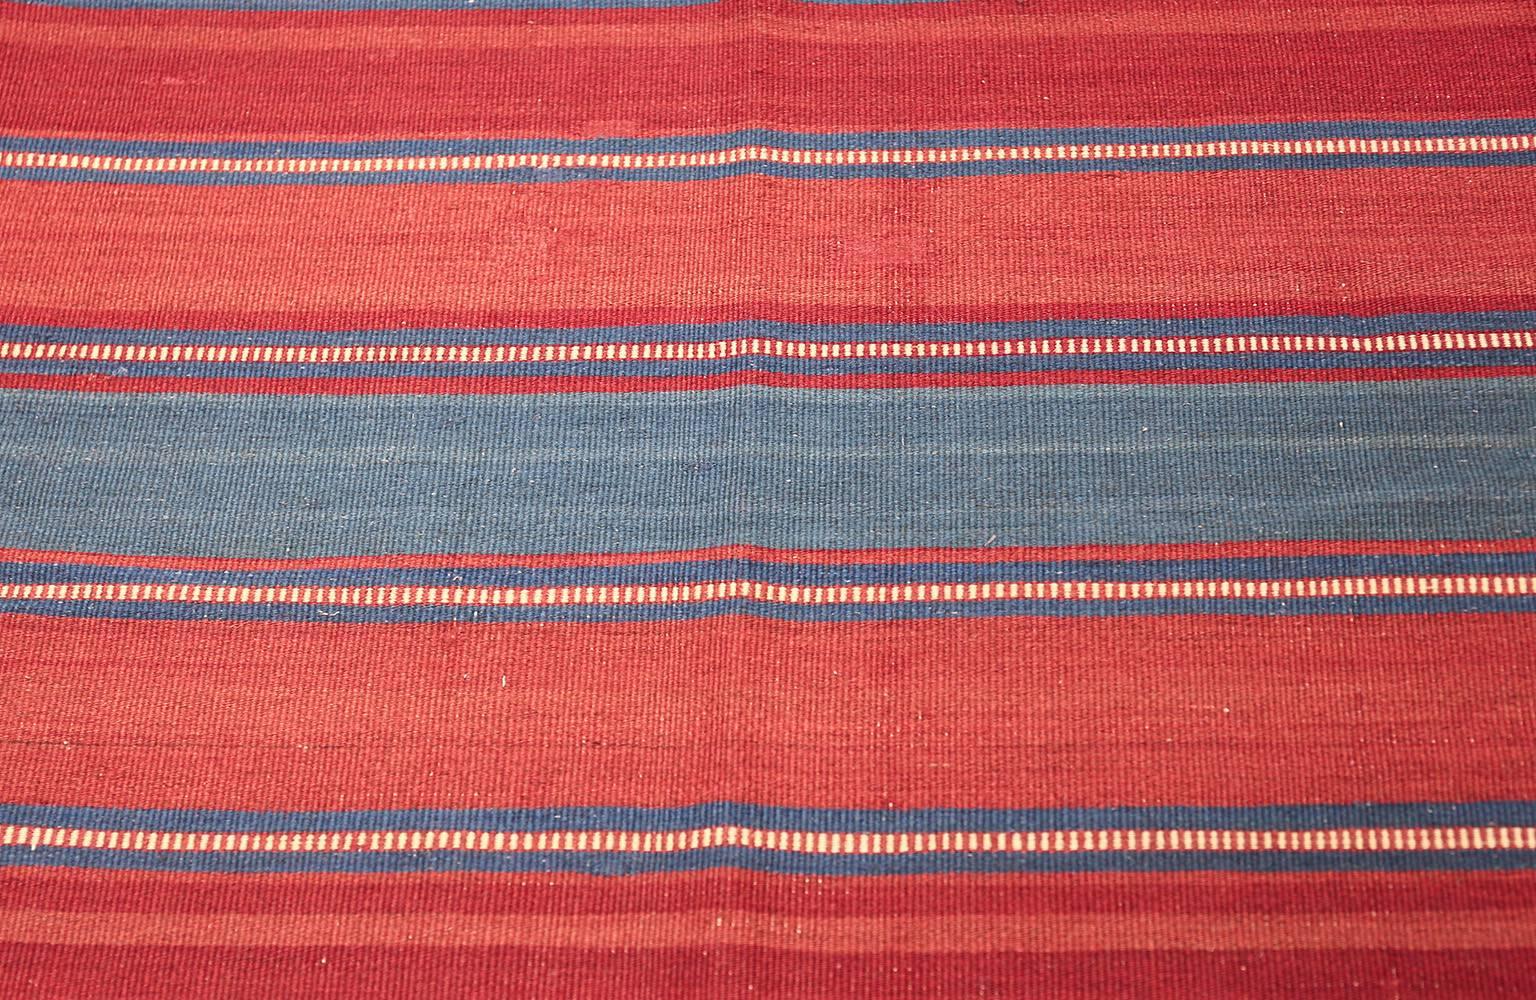 Wool Antique Flat-Woven Shahsavan Caucasian Kilim Rug